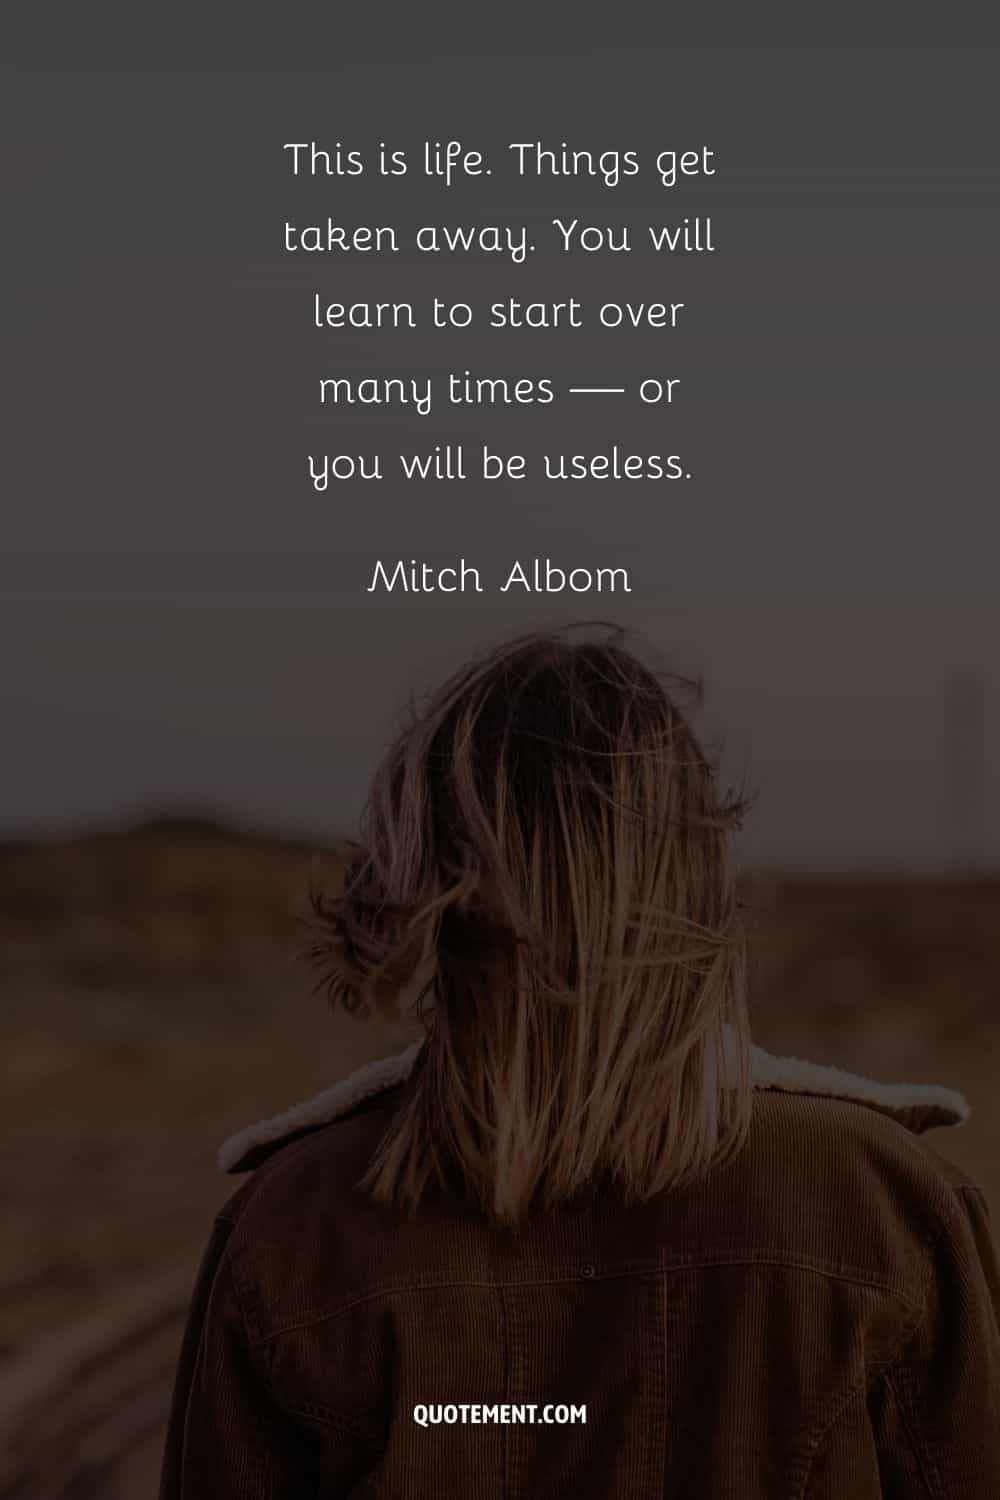 "Así es la vida. Las cosas te las quitan. Aprenderás a empezar de nuevo muchas veces... o serás un inútil". - Mitch Albom